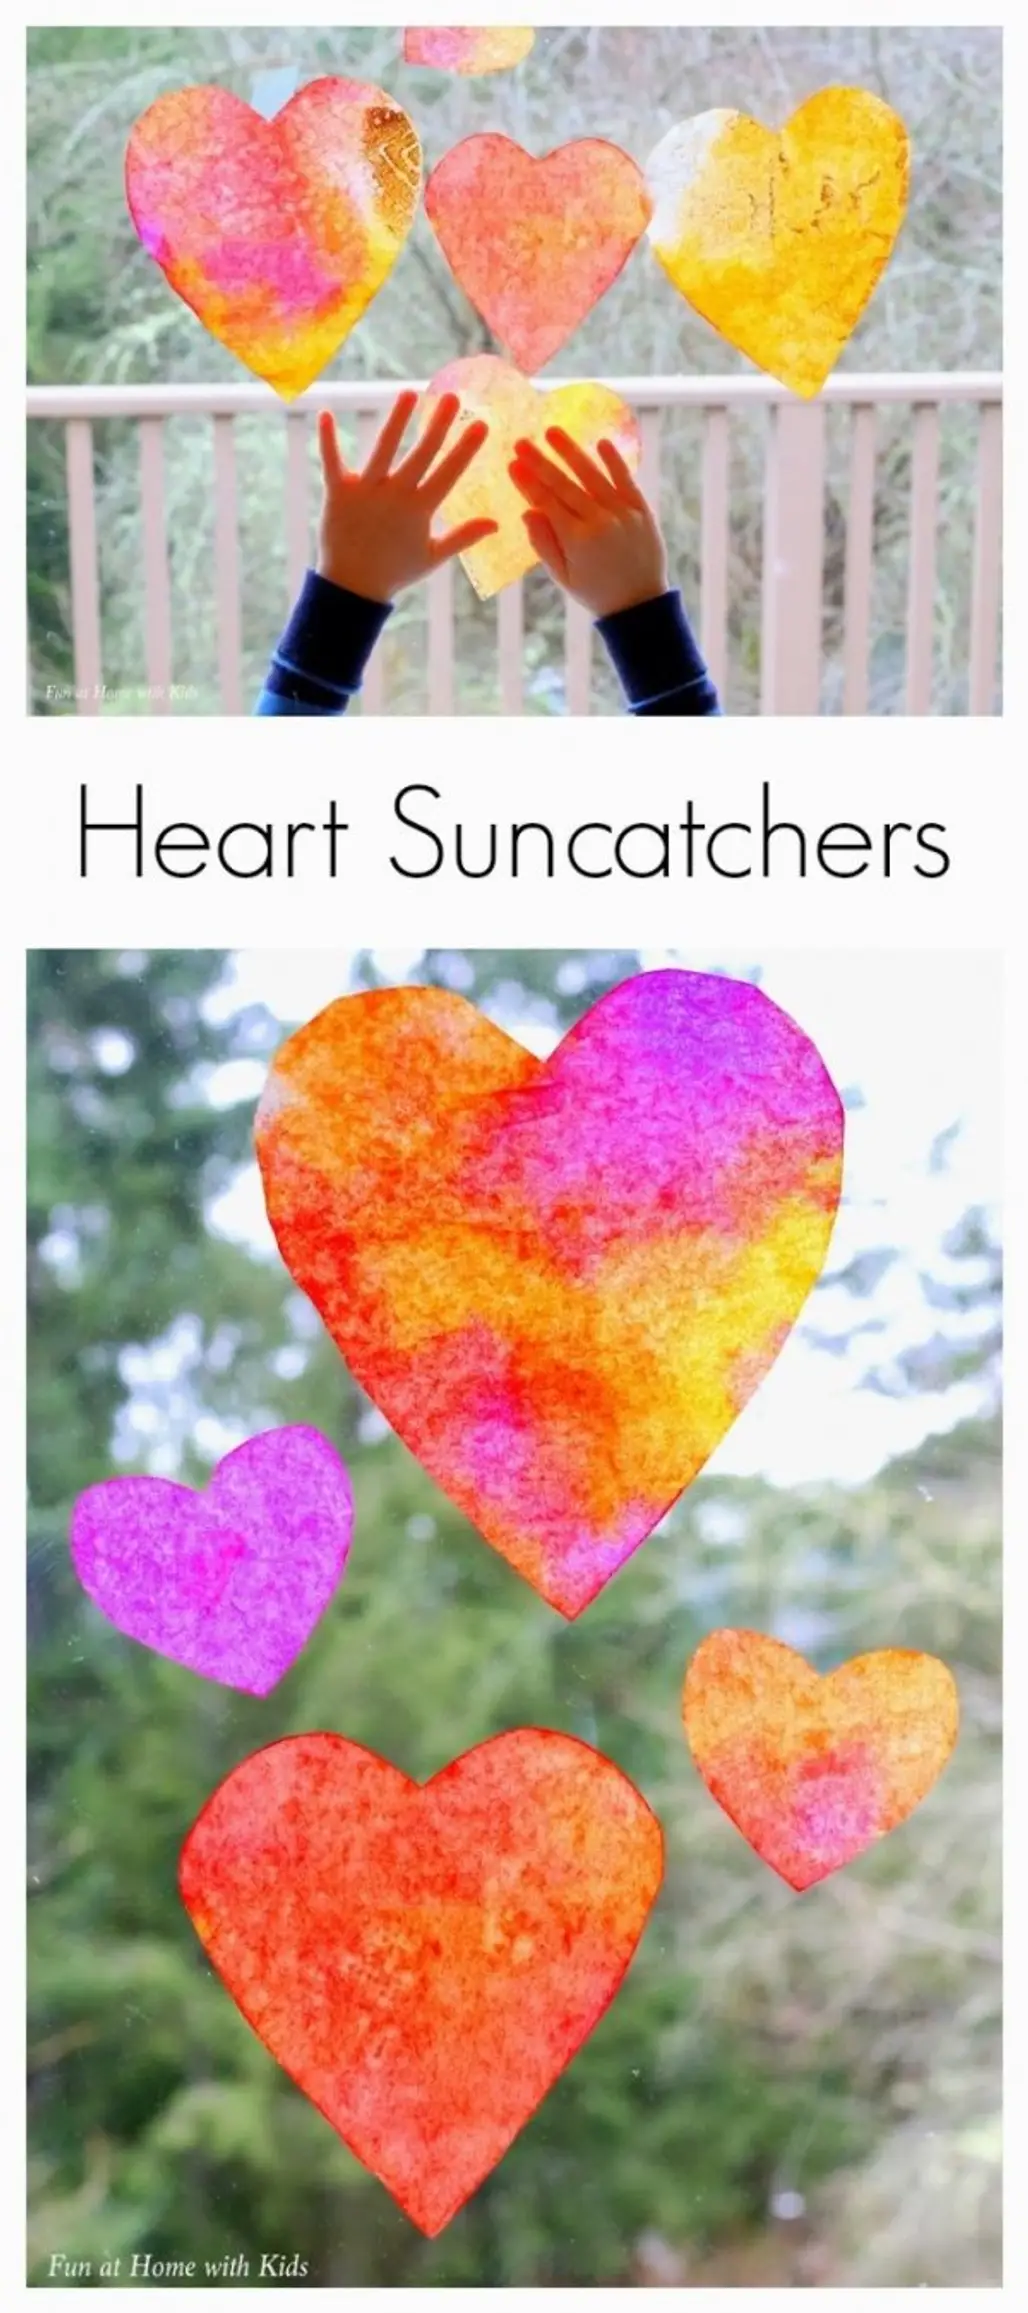 Heart Suncatcher Craft